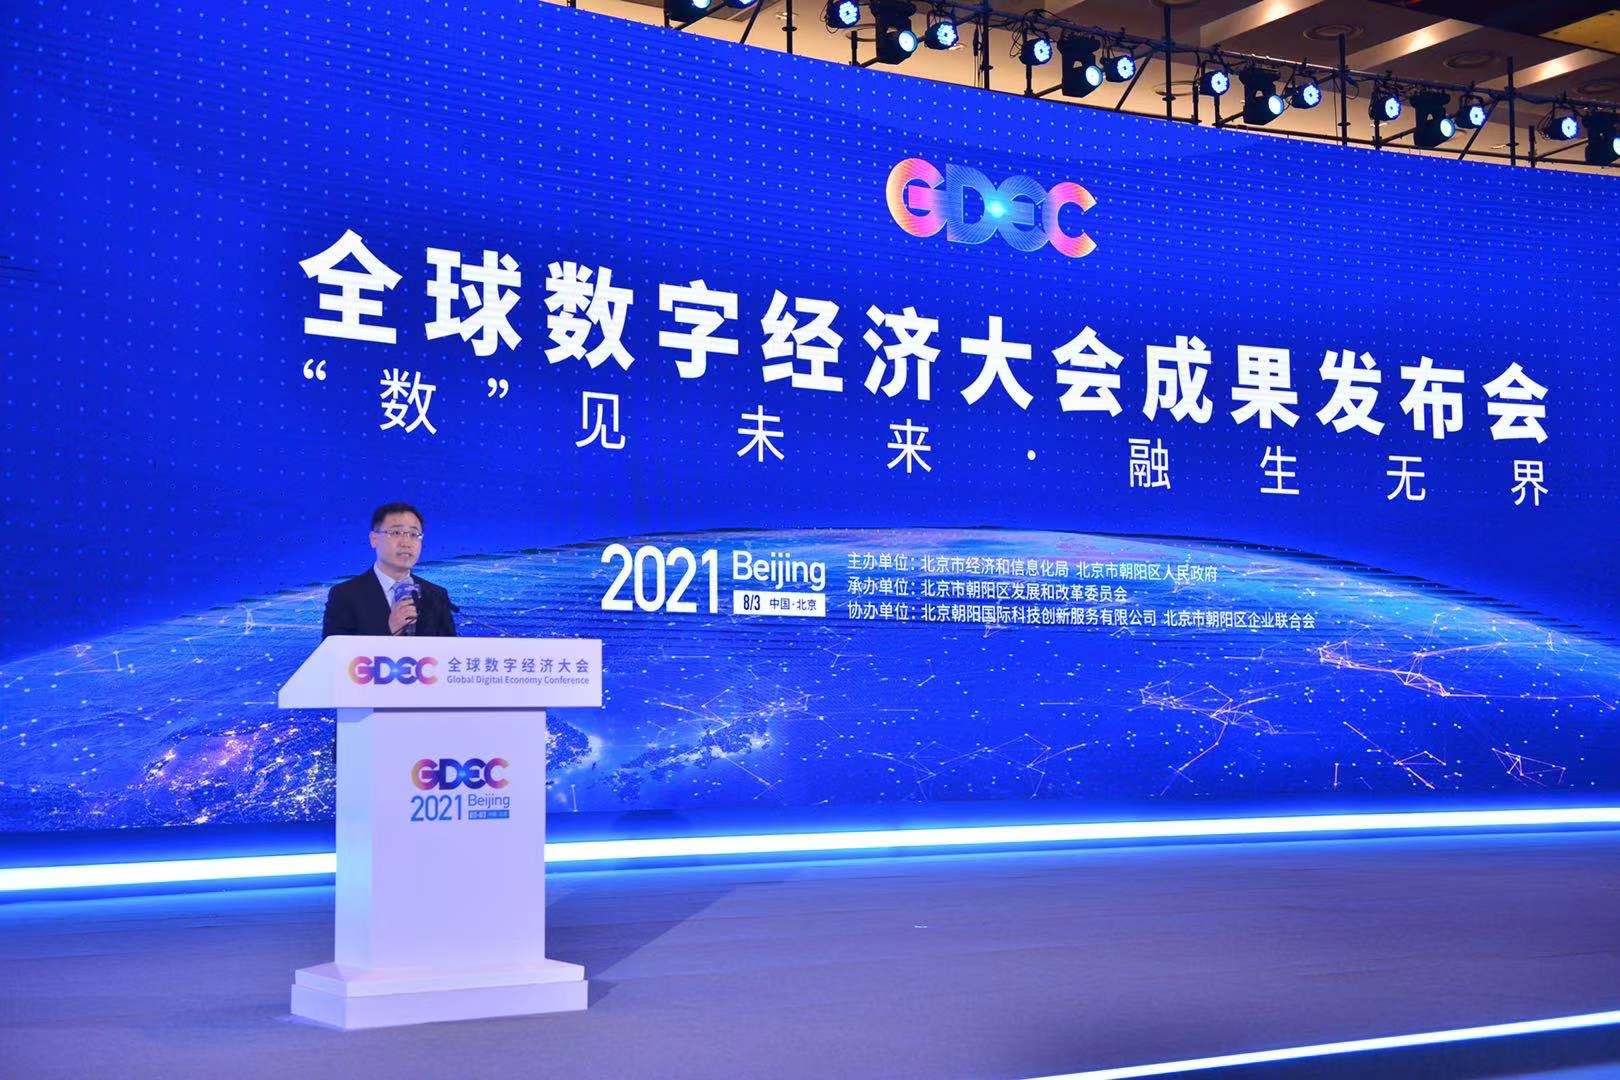 北京市经济和信息化局党组成员、副局长王磊主持会议